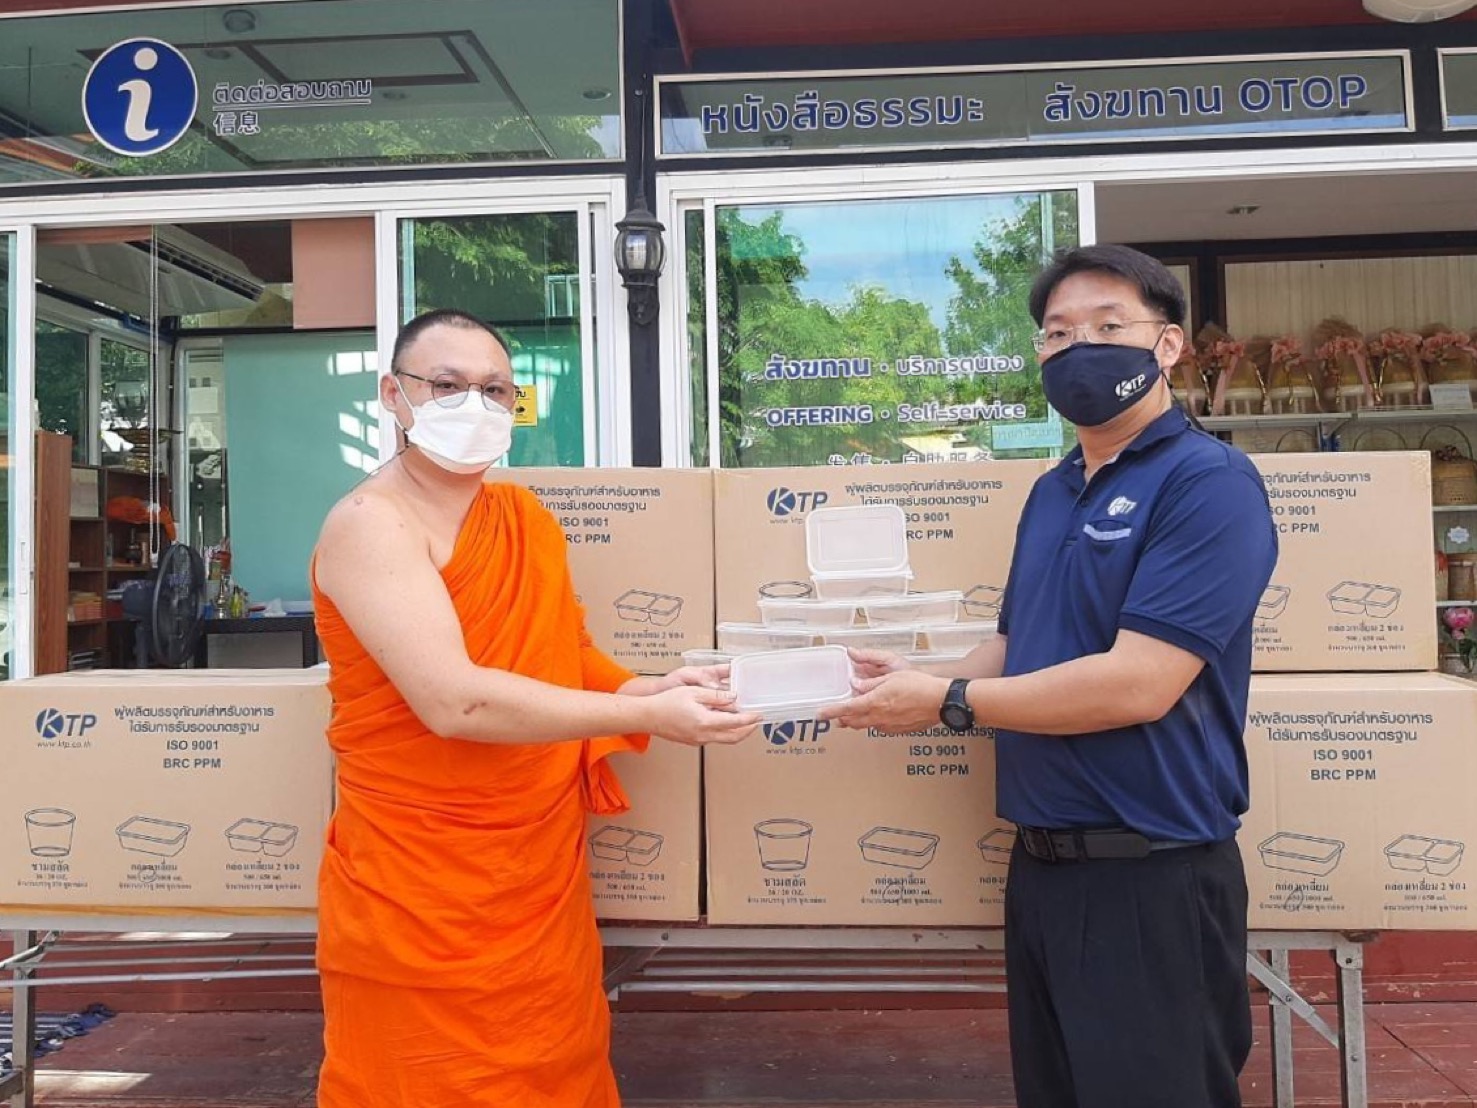 กรุงไทย พลาสแพค ร่วมสนับสนุนบรรจุภัณฑ์กล่องอาหาร กับทางวัดสุทธิวราราม เพื่อมอบอาหารให้กับบุคลากรทางการแพทย์